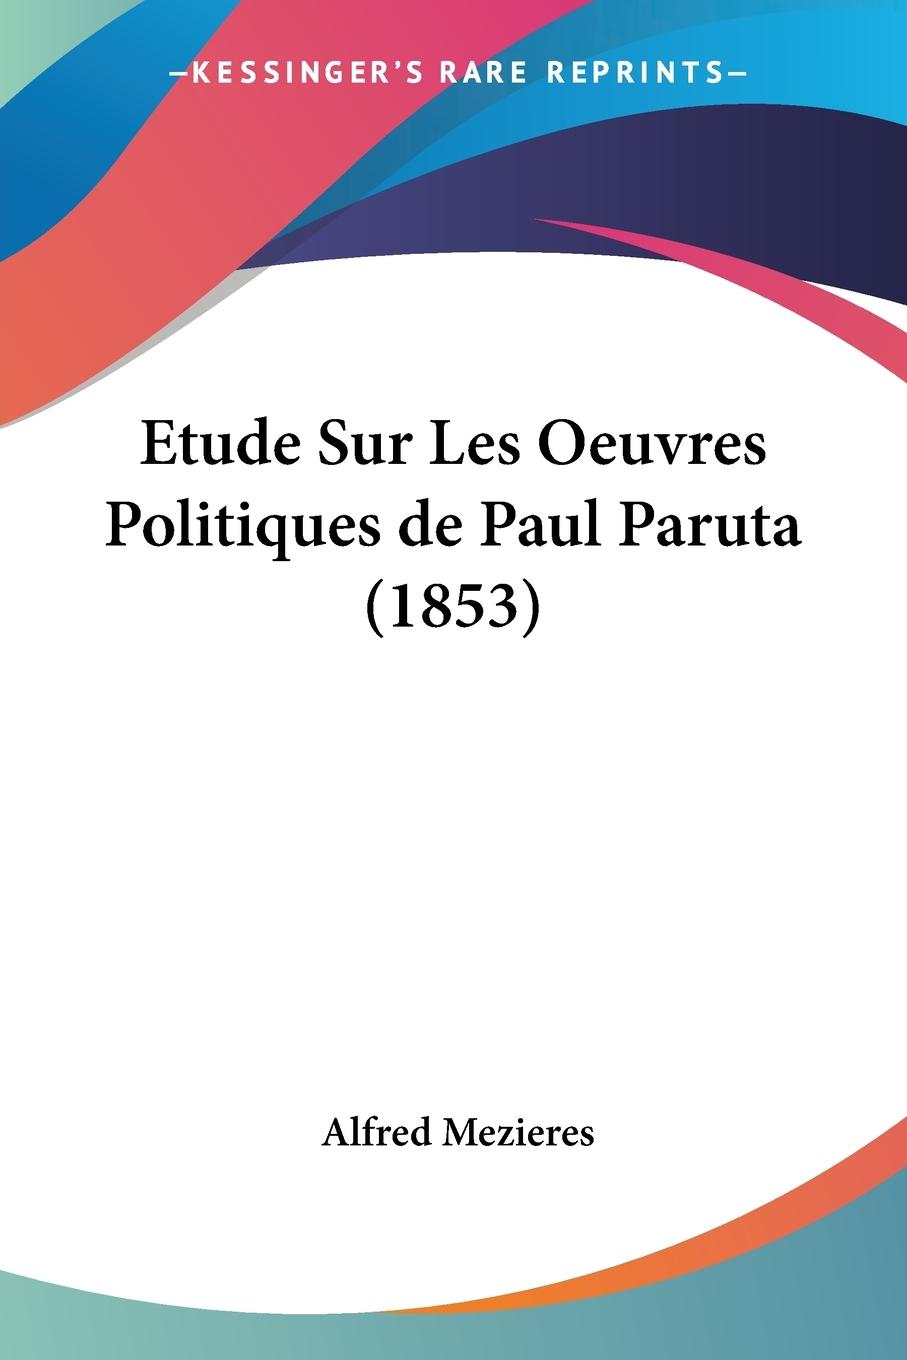 Etude Sur Les Oeuvres Politiques de Paul Paruta (1853) - Mezieres, Alfred